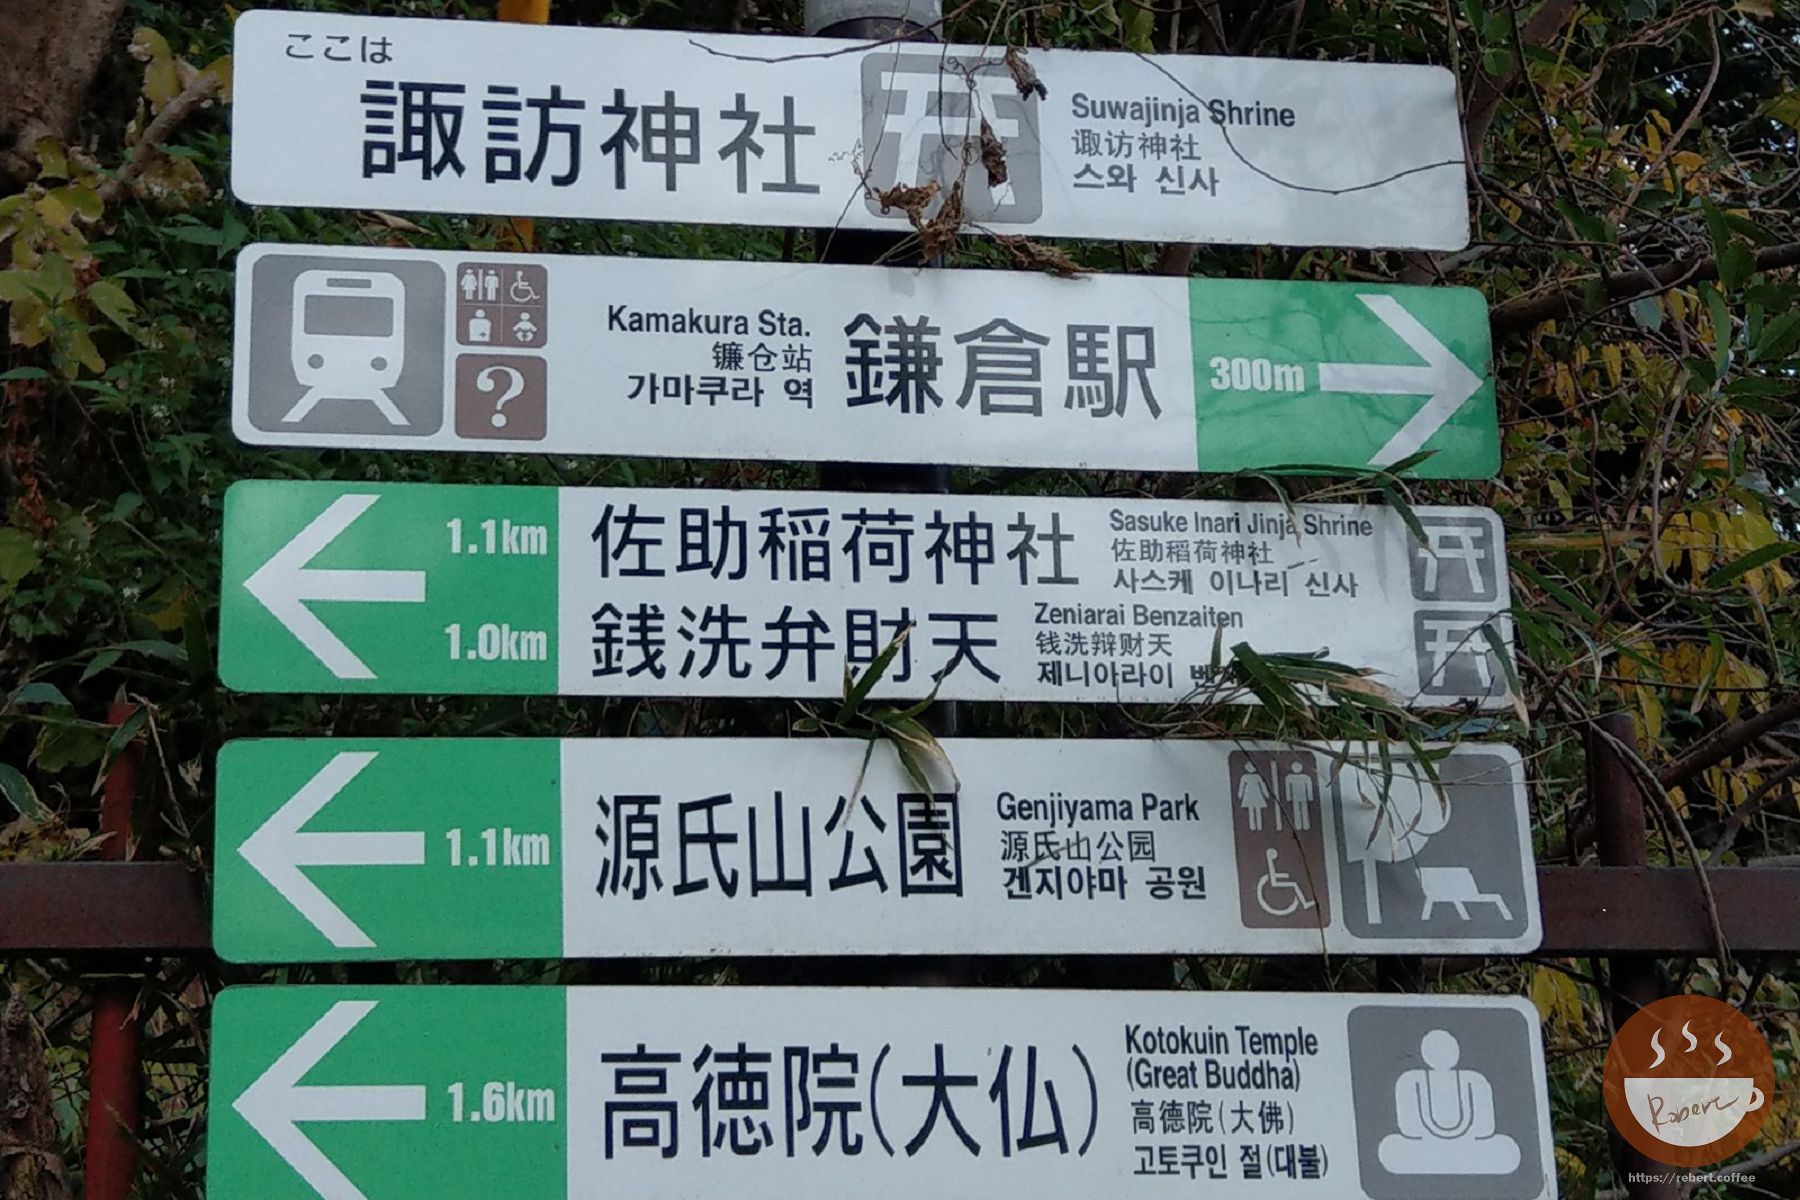 停下來拍的扛棒，顯示往高德院1.6公里，往鎌倉車站300公尺，其實整個距離只有兩公里約30分鐘內可以走完的腳程